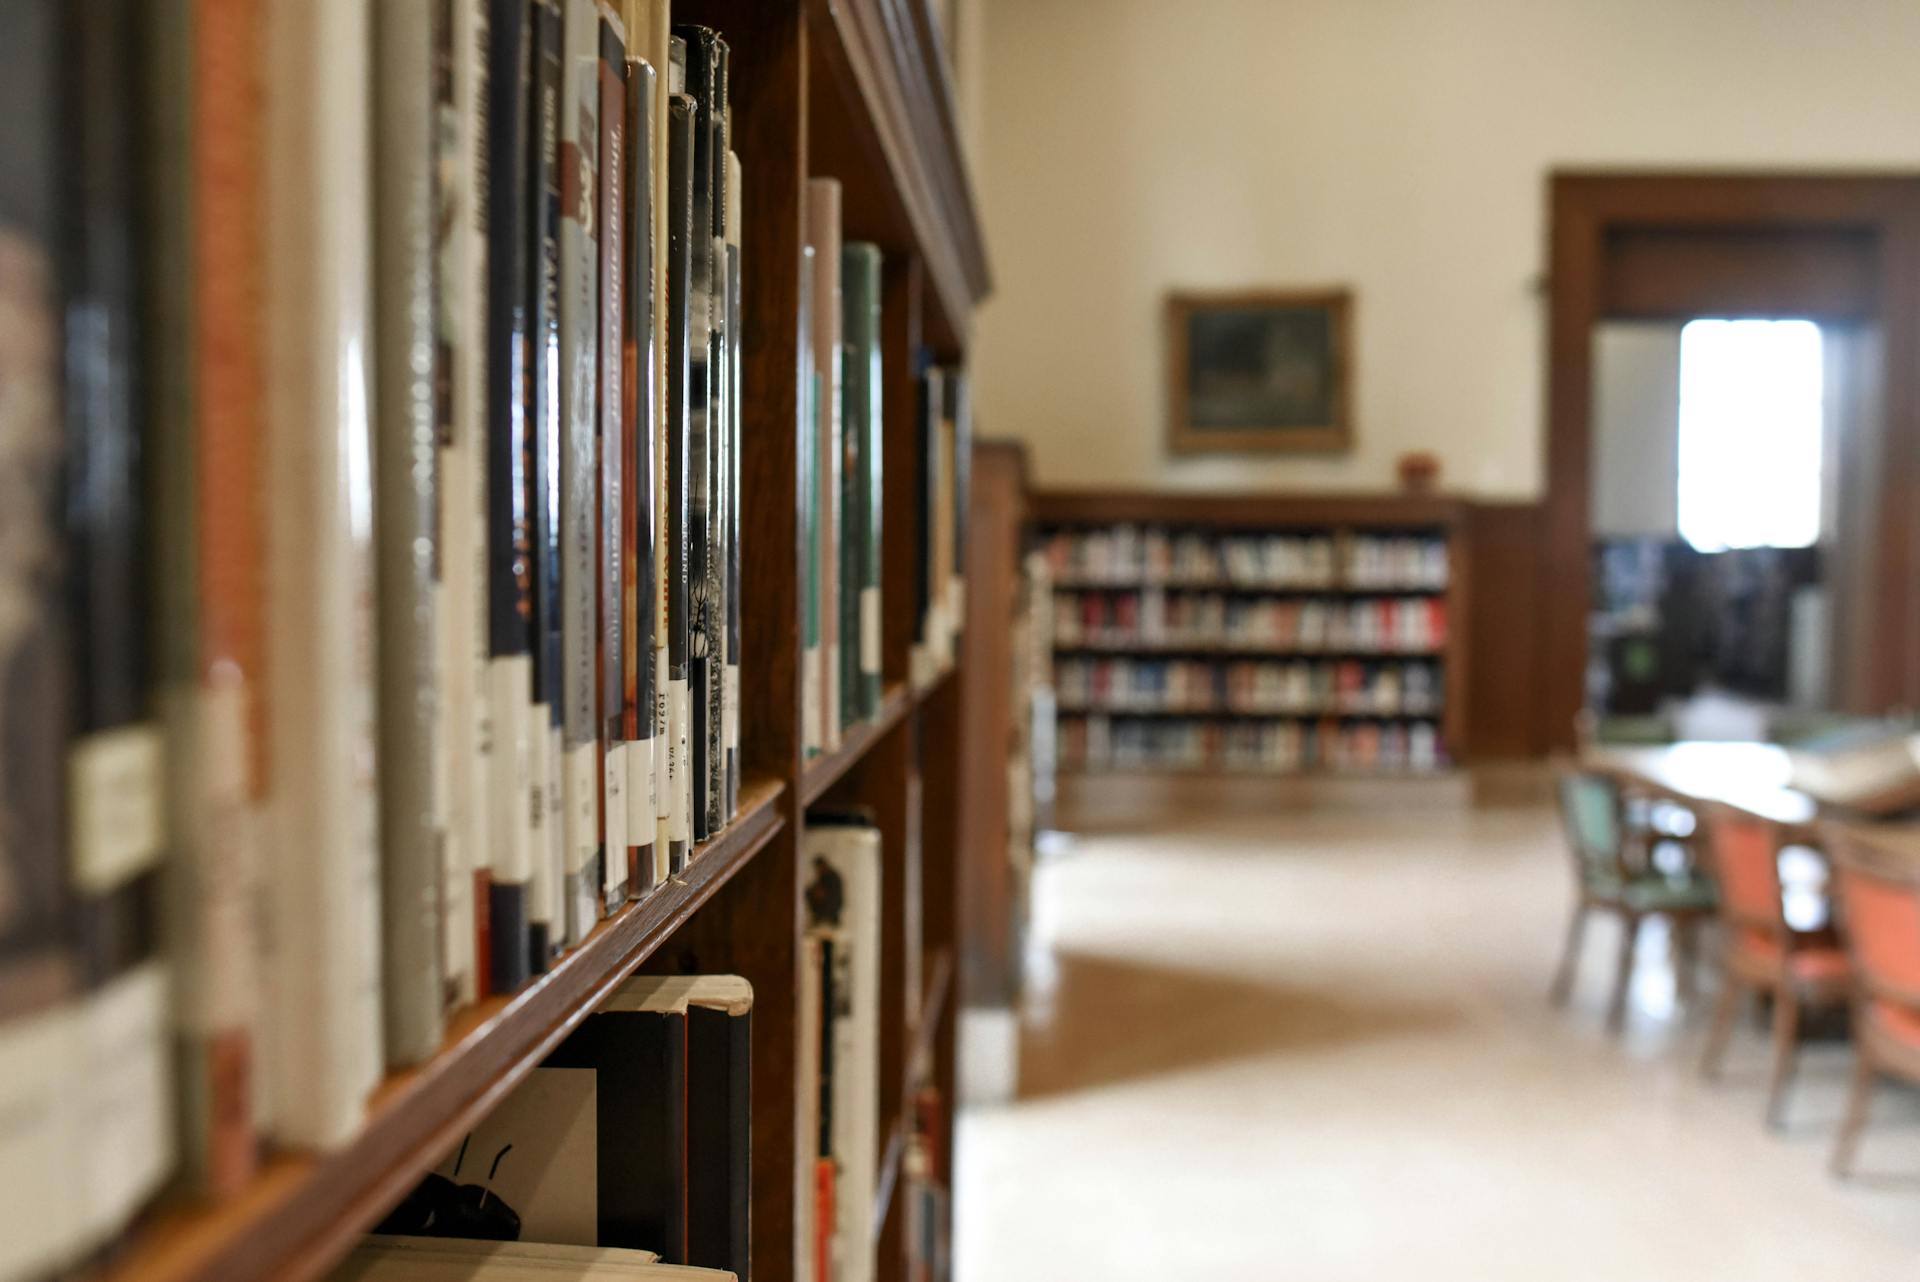 Una biblioteca | Fuente: Pexels